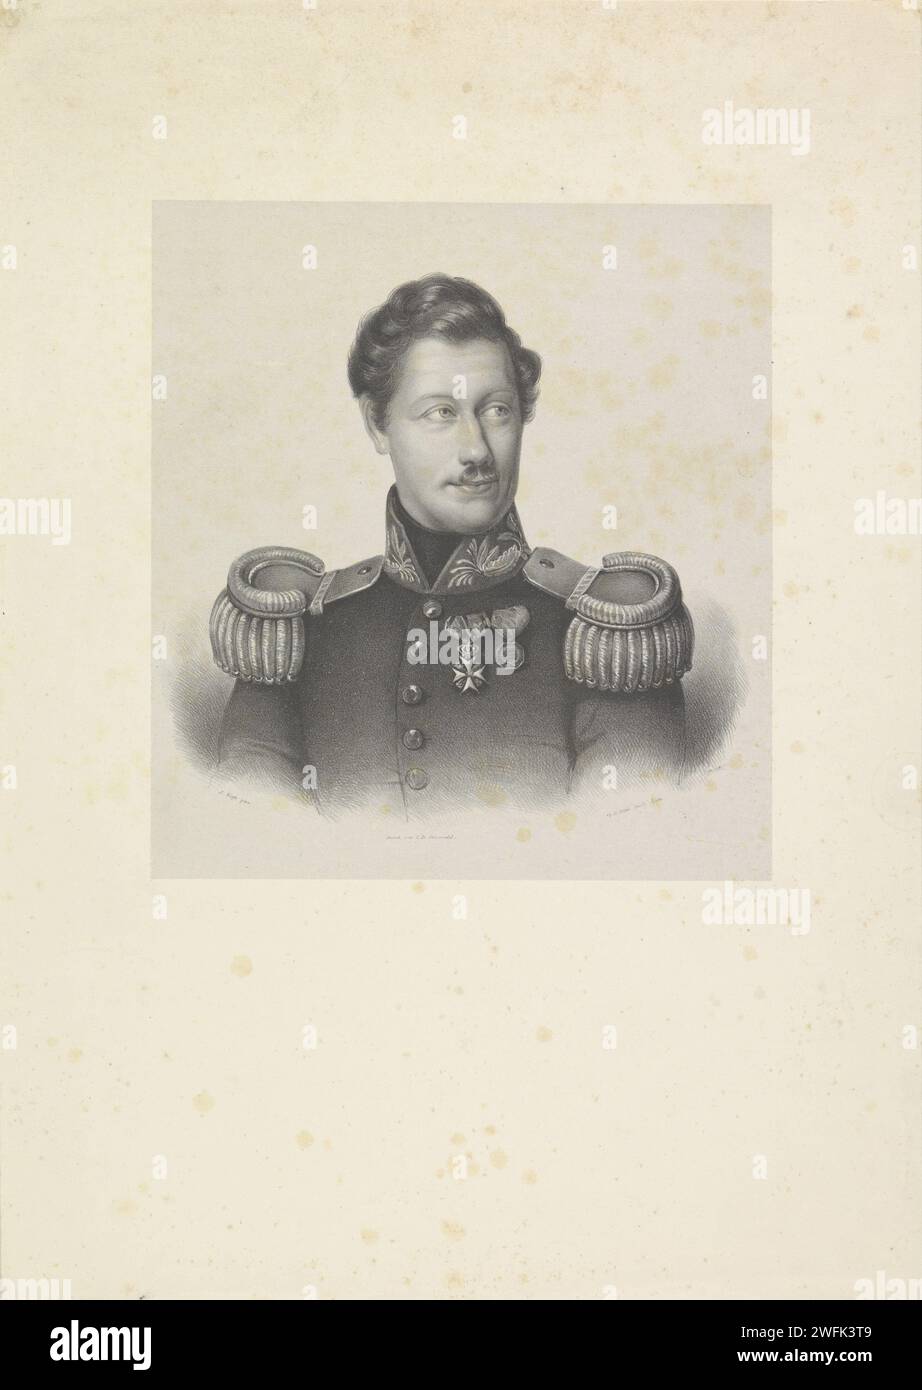 Ritratto di W. A. Roest, Isaac Cornelis Elink Sterk, dopo Jan Kieft, stampa 1822 - 1863 la persona ritratta indossa un'uniforme militare con spalline e cavalieri sul petto. Sembra a destra. Il giornale dell'Aia. Foto Stock